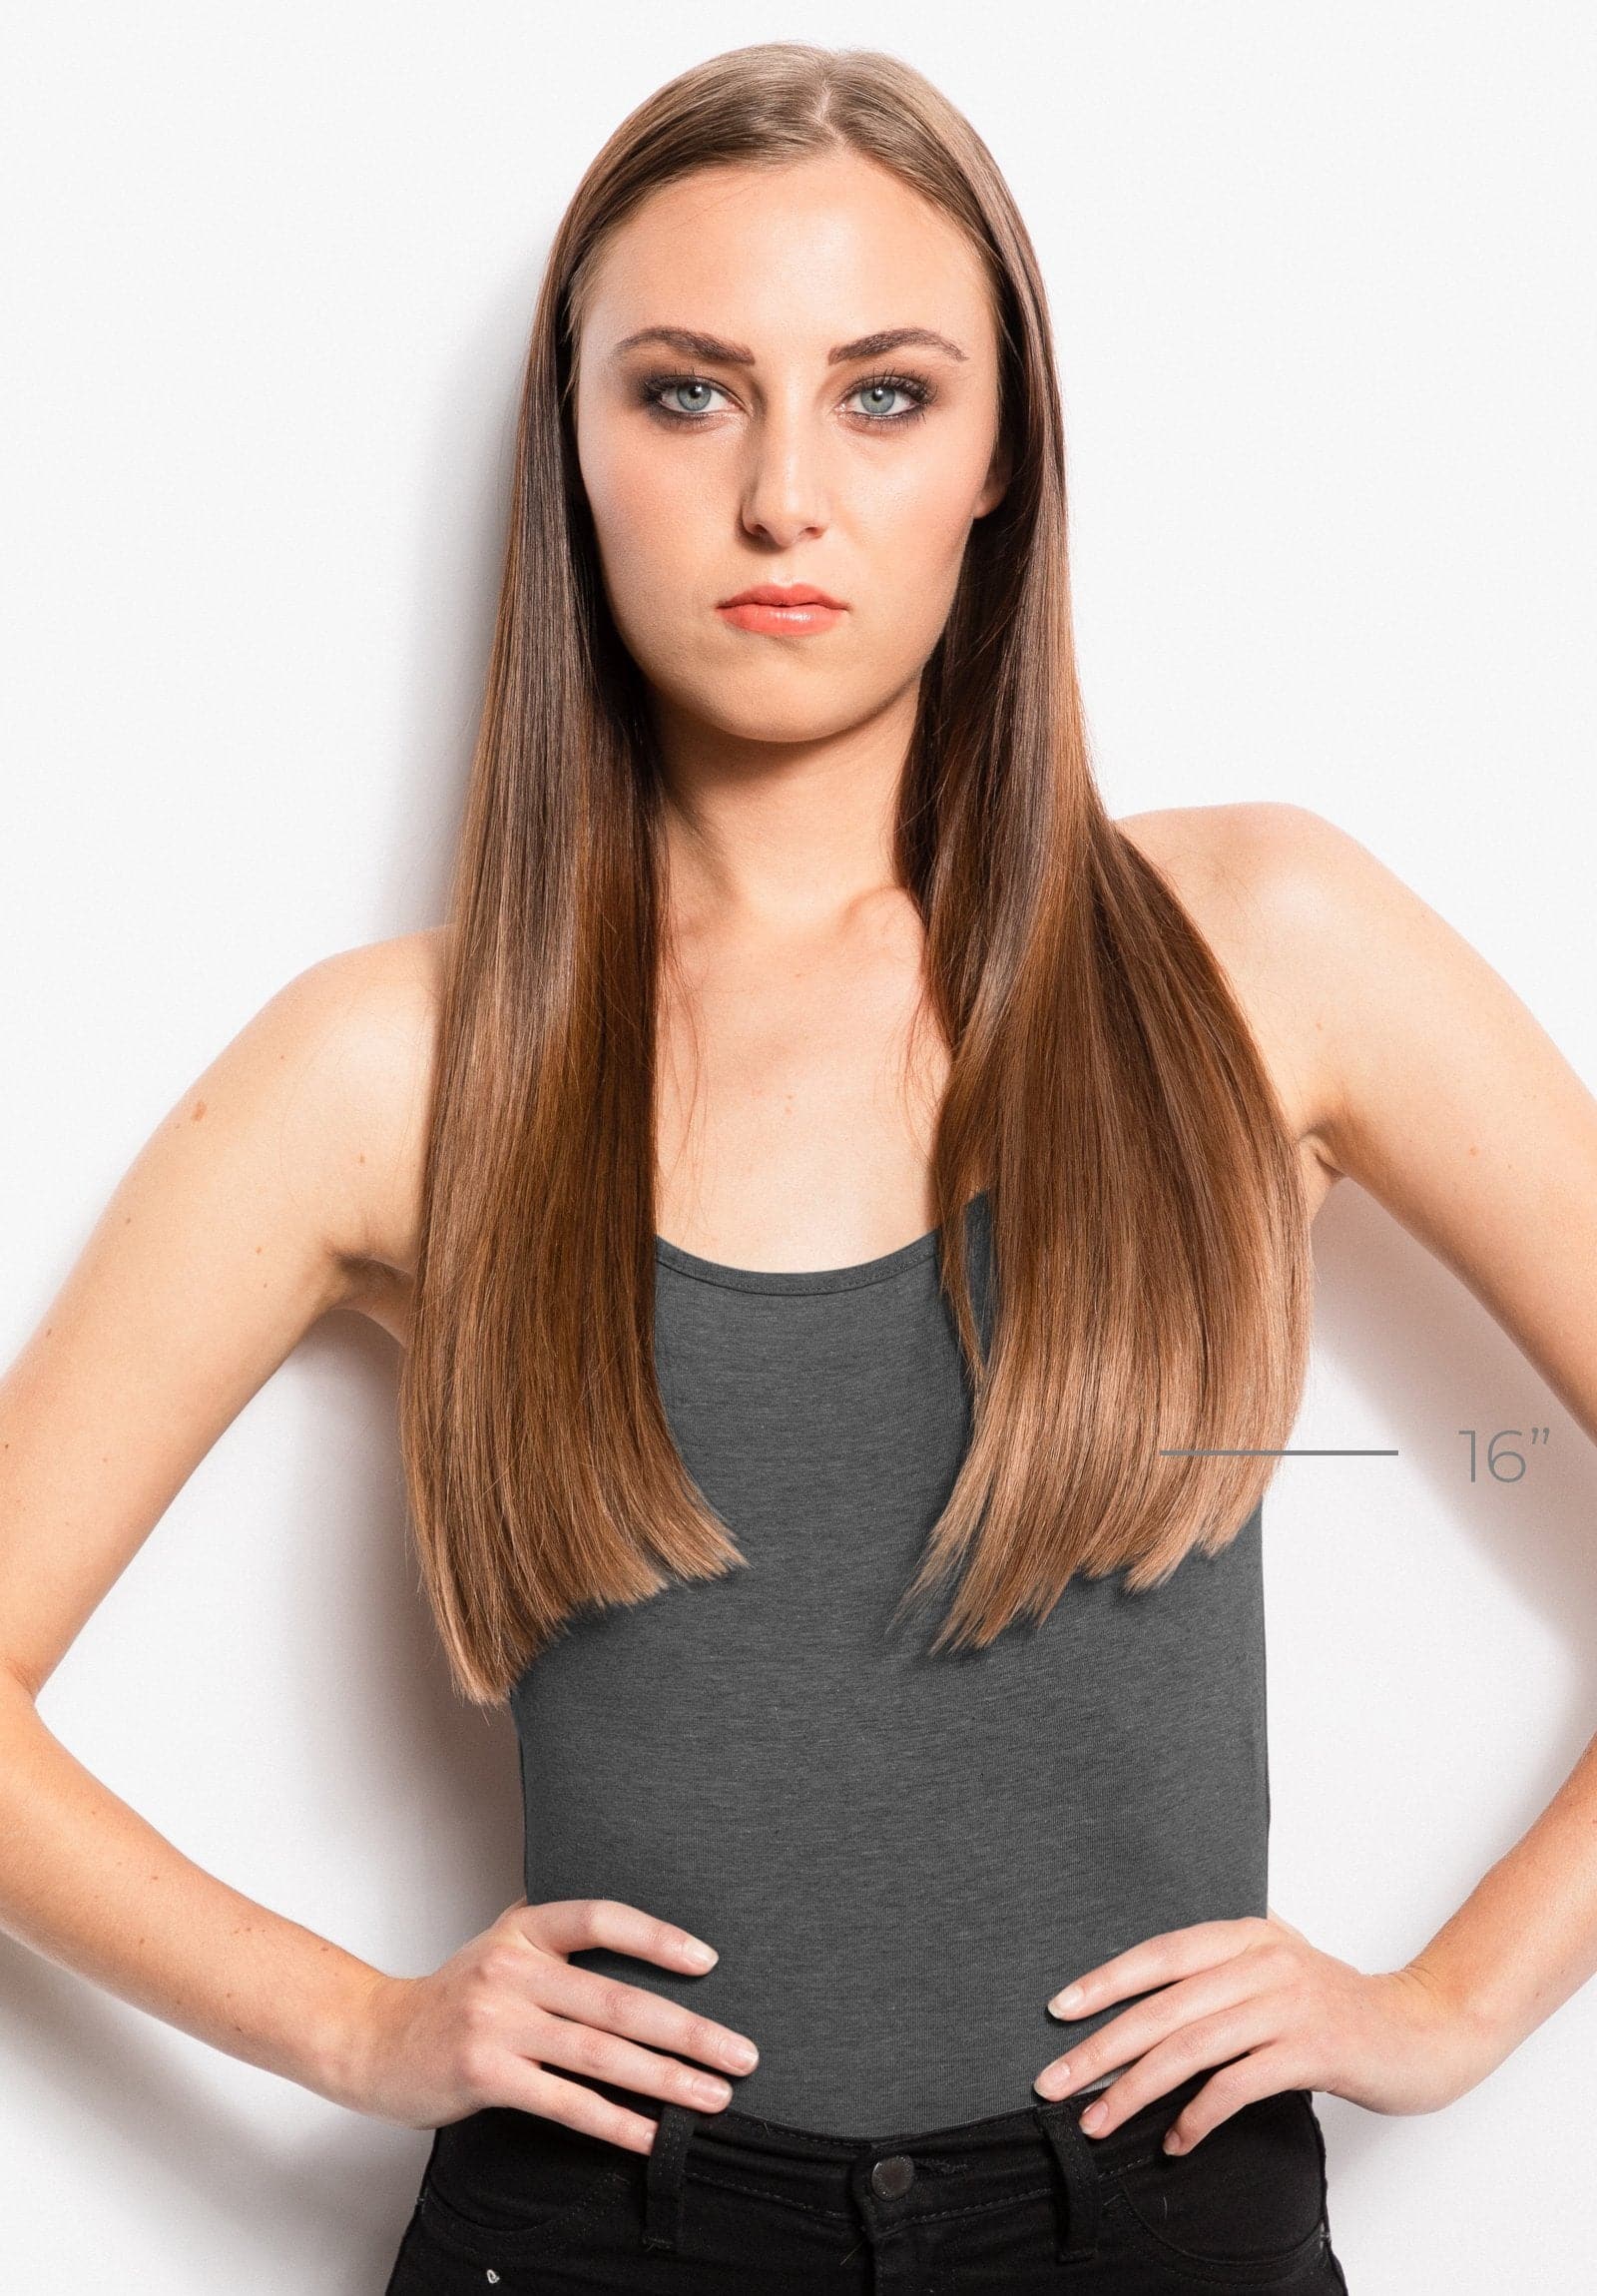 I-Link/Flat-Tip (Beaded Method) Hair Extension Starter Kit - Donna